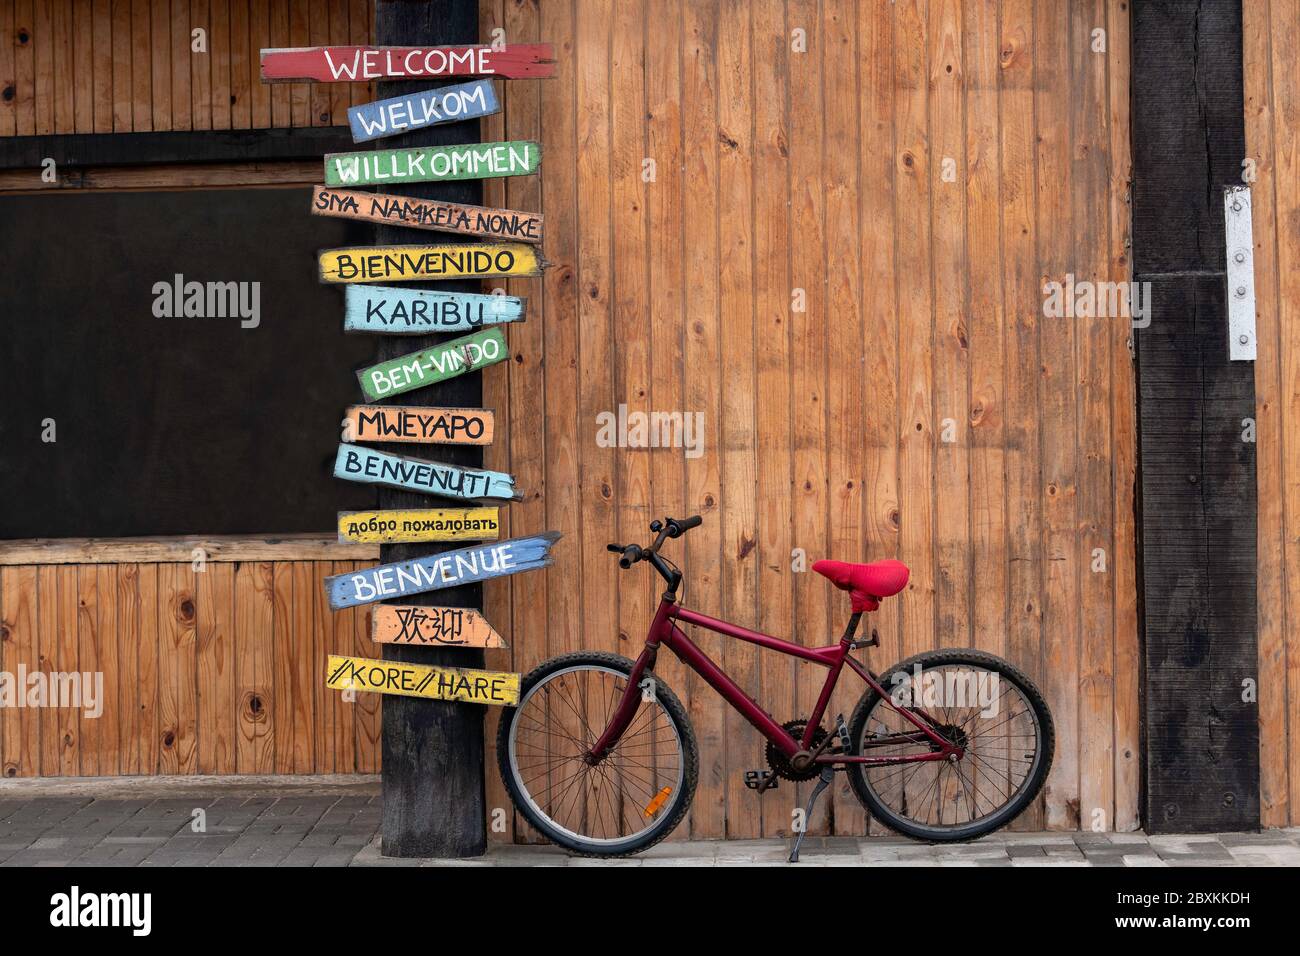 Vélo rouge stationné à côté d'un poteau avec des panneaux de bienvenue dans plusieurs langues différentes. Banque D'Images